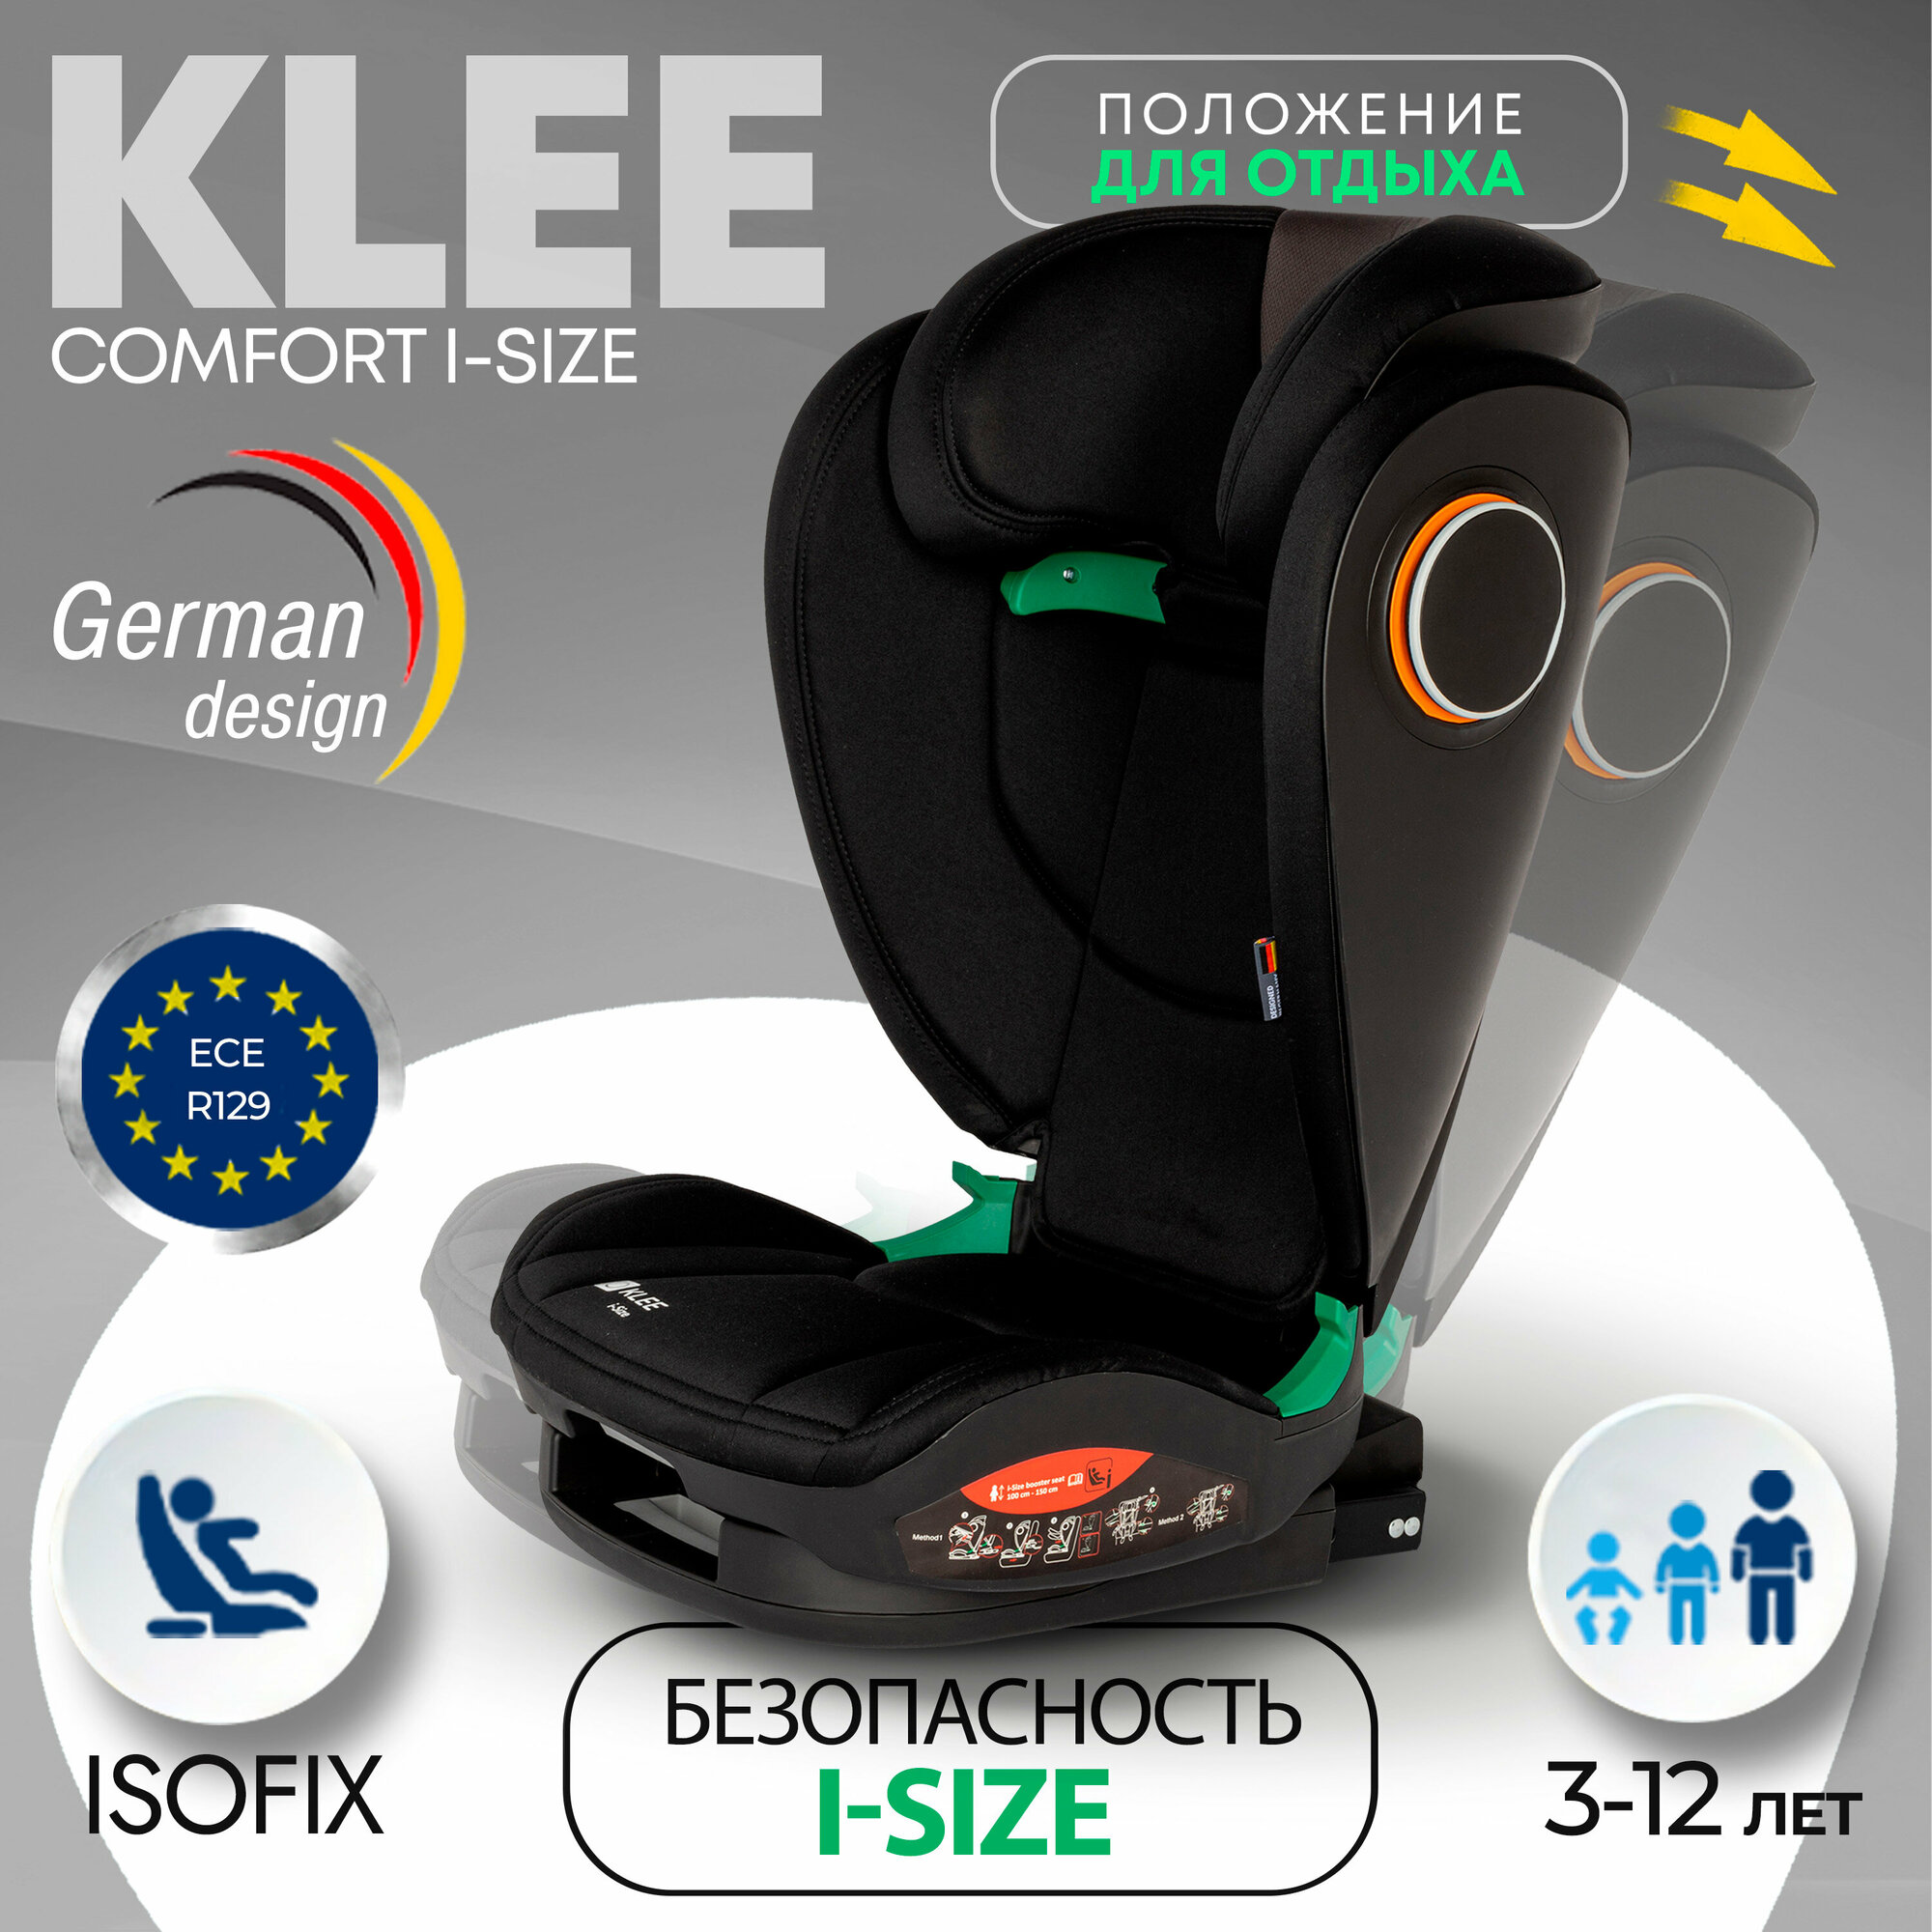 KLEE Comfort I-Size